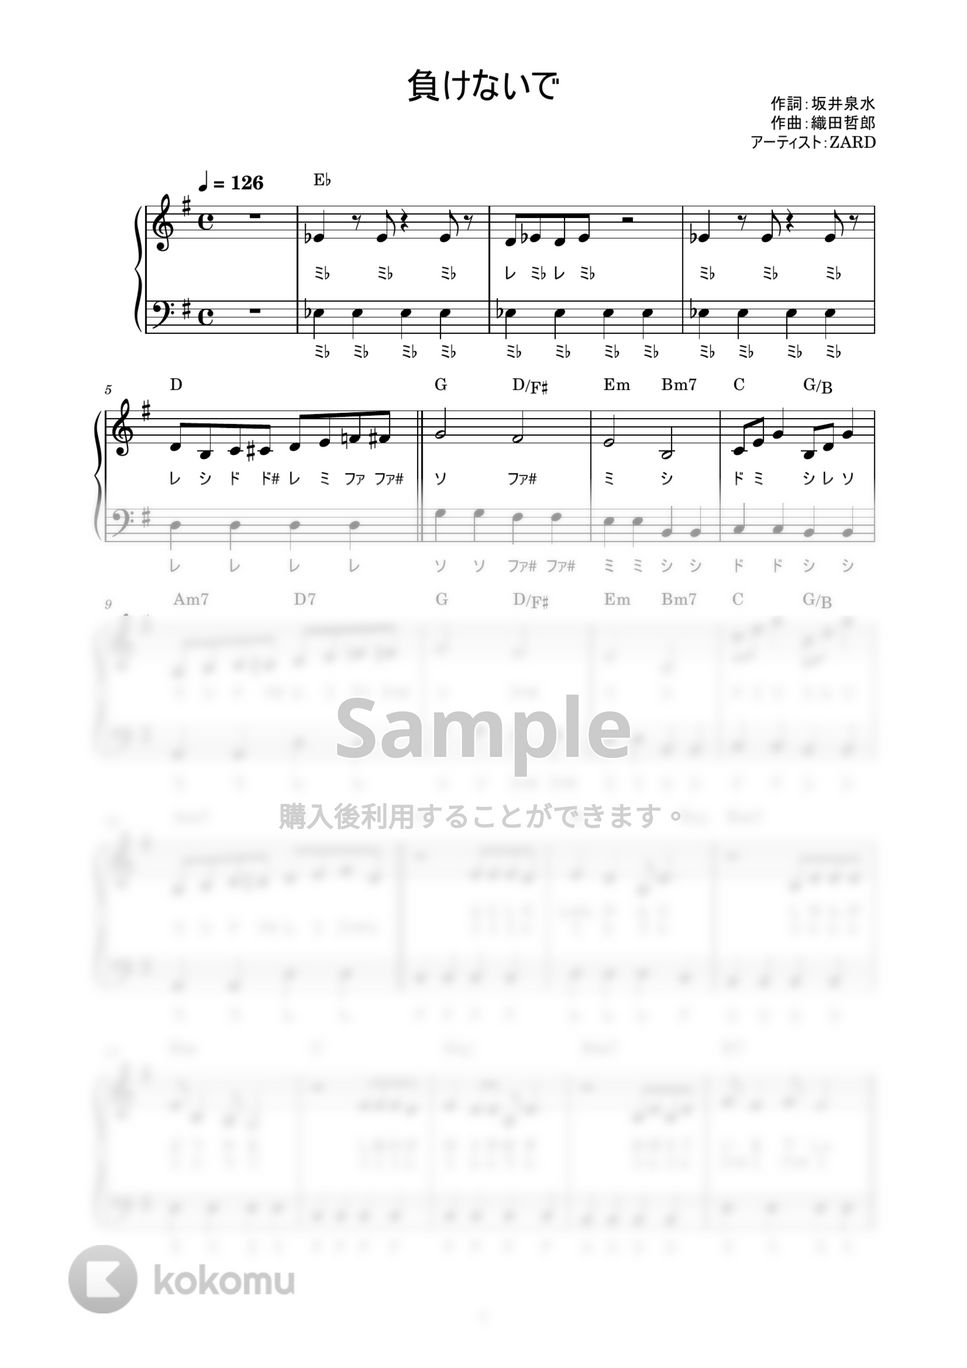 ZARD - 負けないで (かんたん / 歌詞付き / ドレミ付き / 初心者) by piano.tokyo